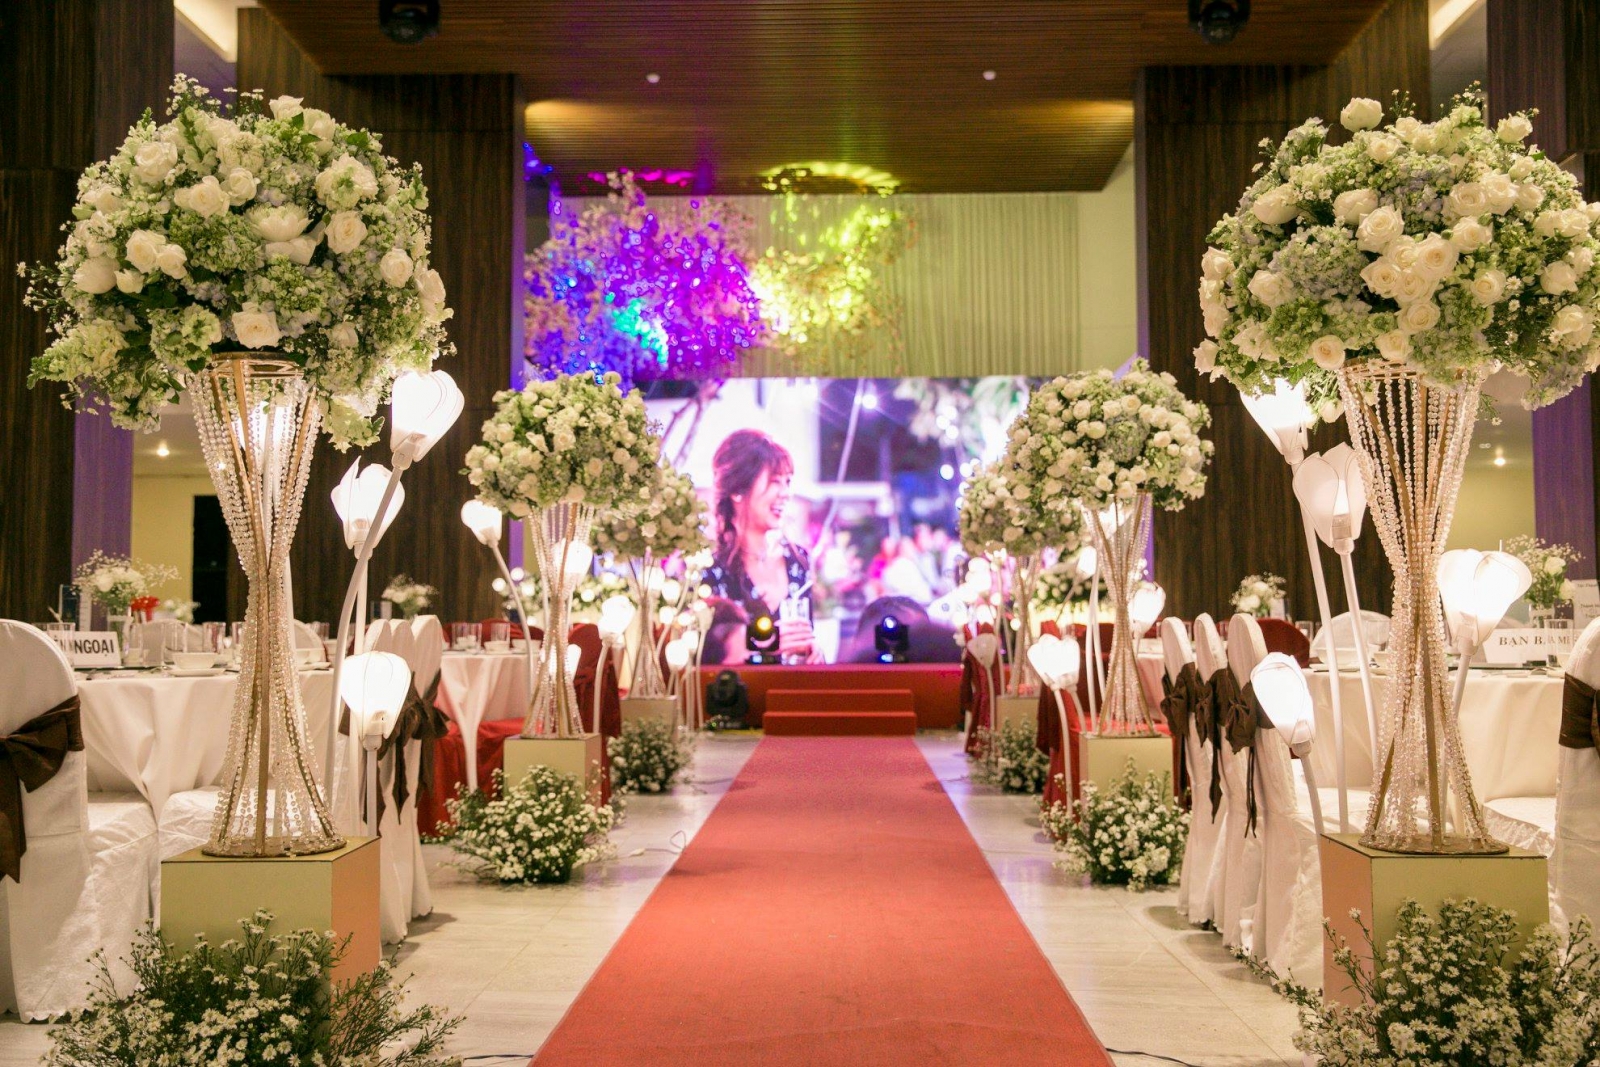 Trang trí đám cưới trọn gói tại nhà hàng bằng hoa lụa giá rẻ